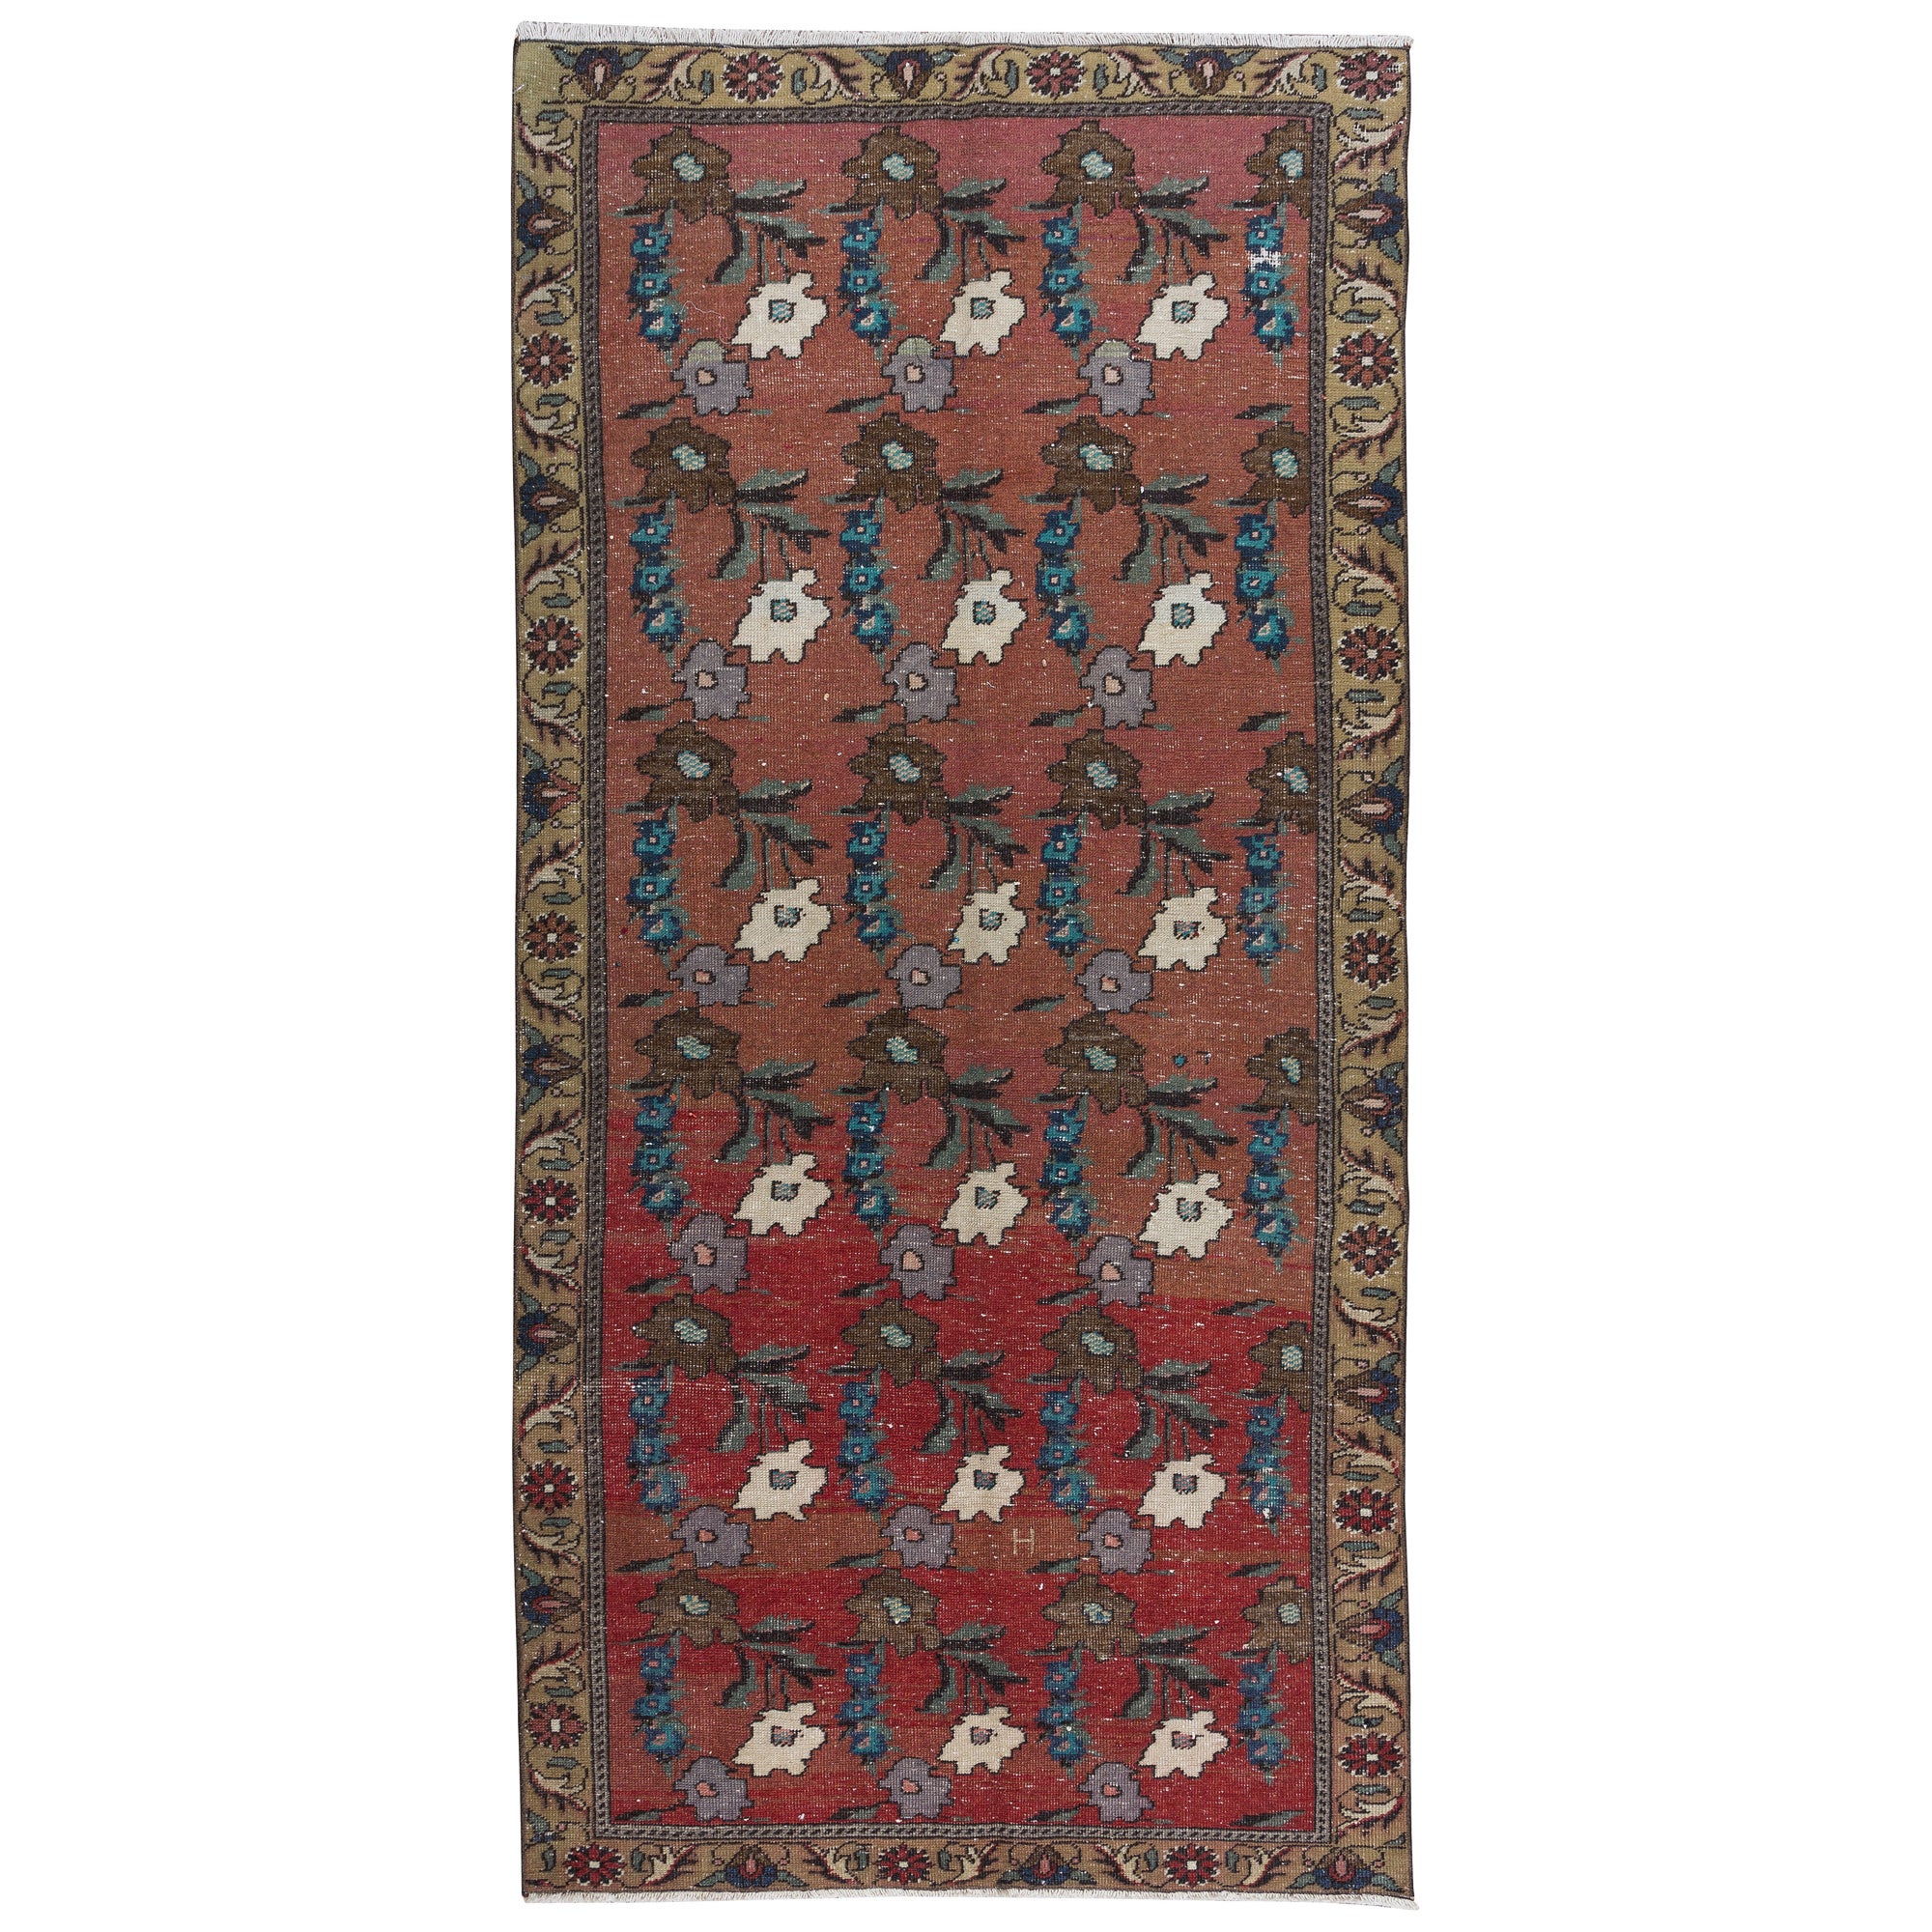 3.9x8.4 Ft Vintage Handmade Floral Patterned Turkish Rug in Red, Blue & Beige For Sale